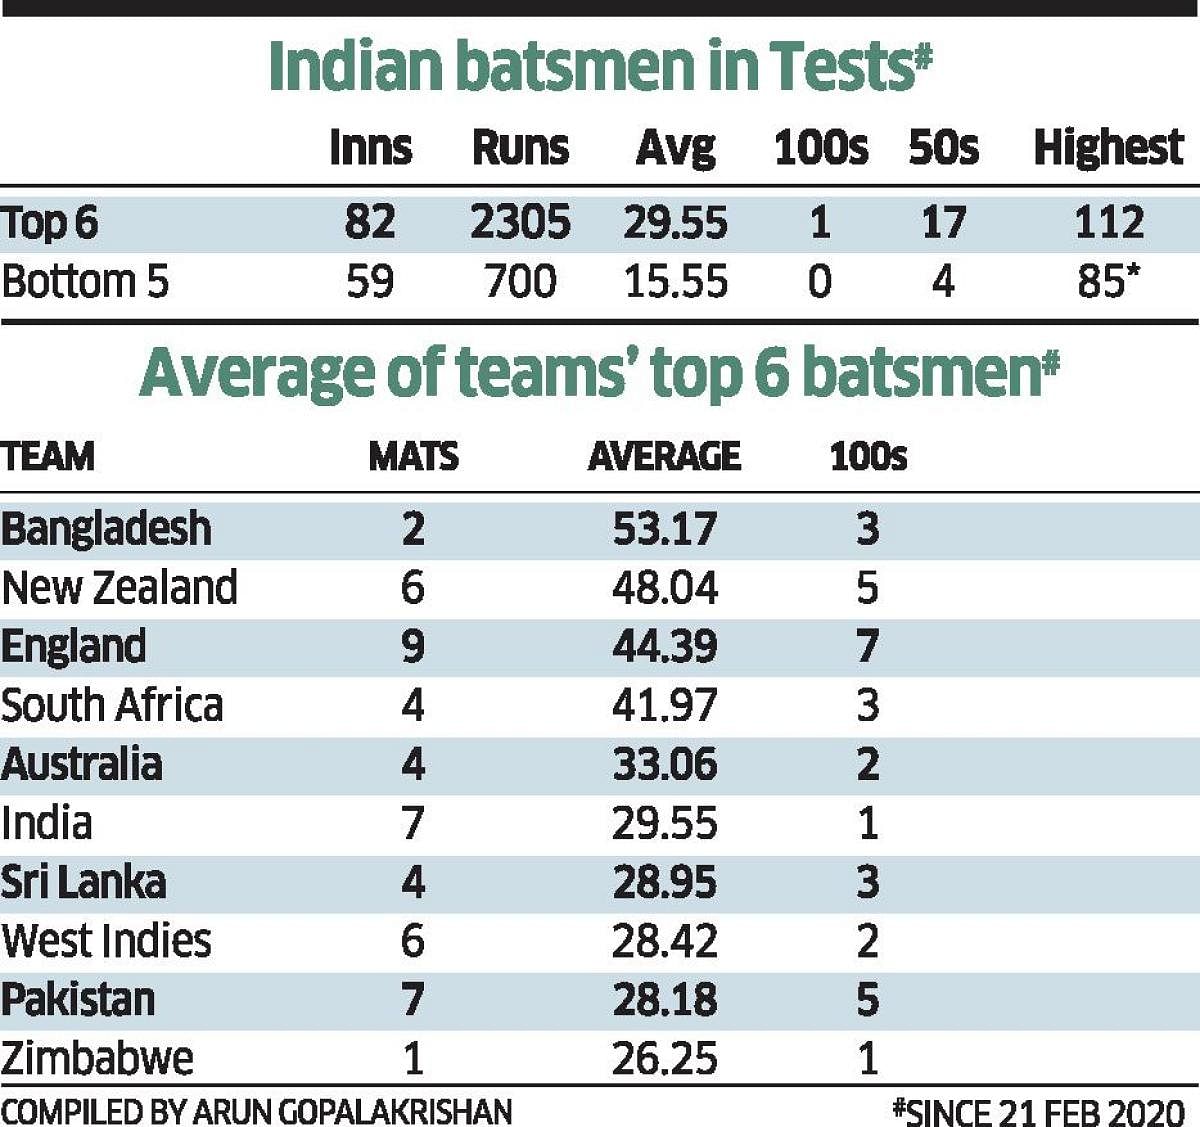 Indian batsmen in Tests since Feb 21, 2020